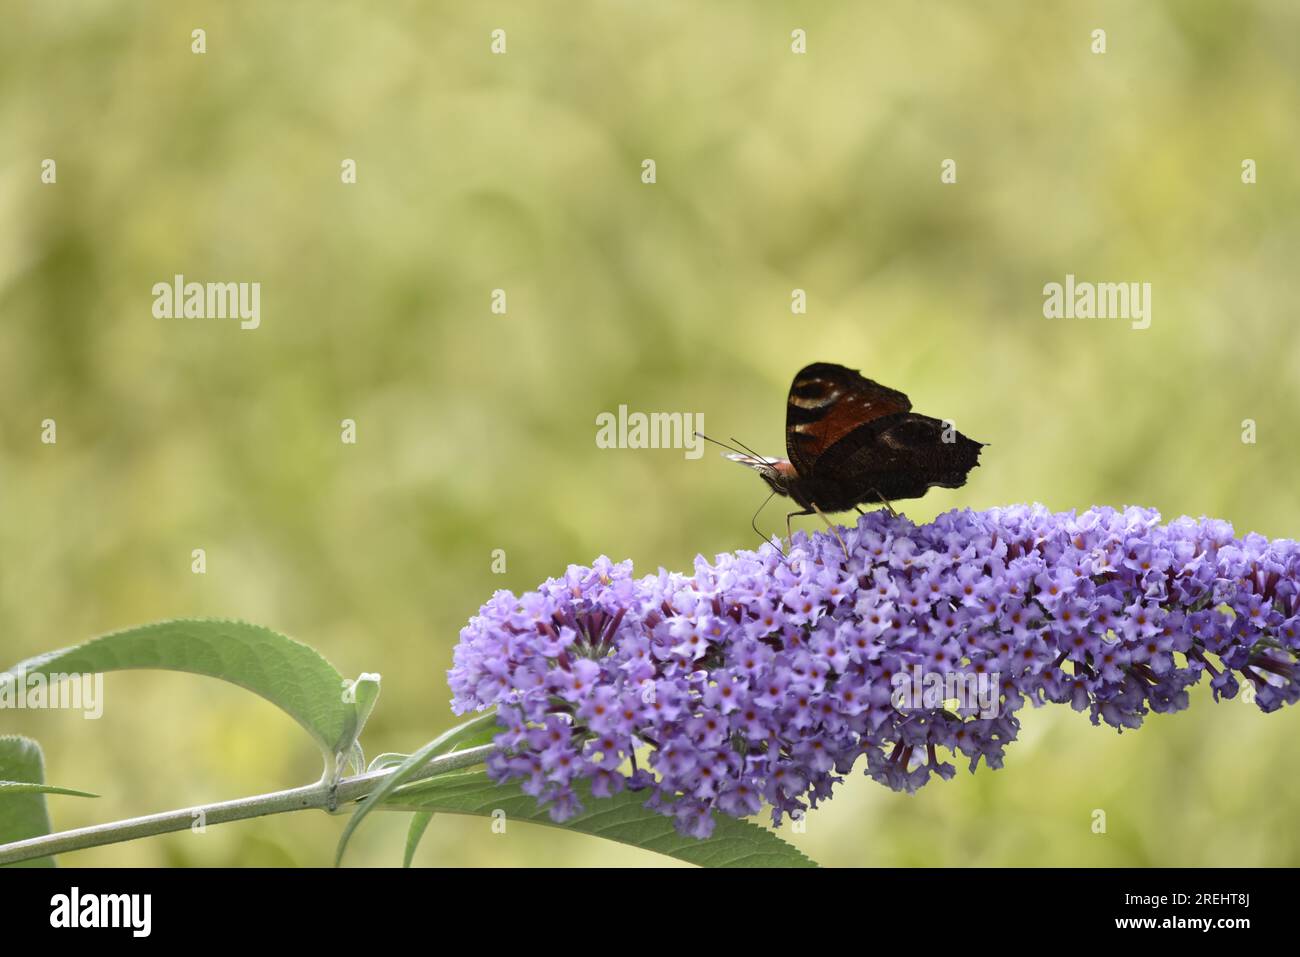 Avant-plan droit image d'un papillon de paon (Inachis io) marchant de droite à gauche le long du sommet d'une tige de fleurs de Bouddleia pourpre, fond de bokeh Banque D'Images